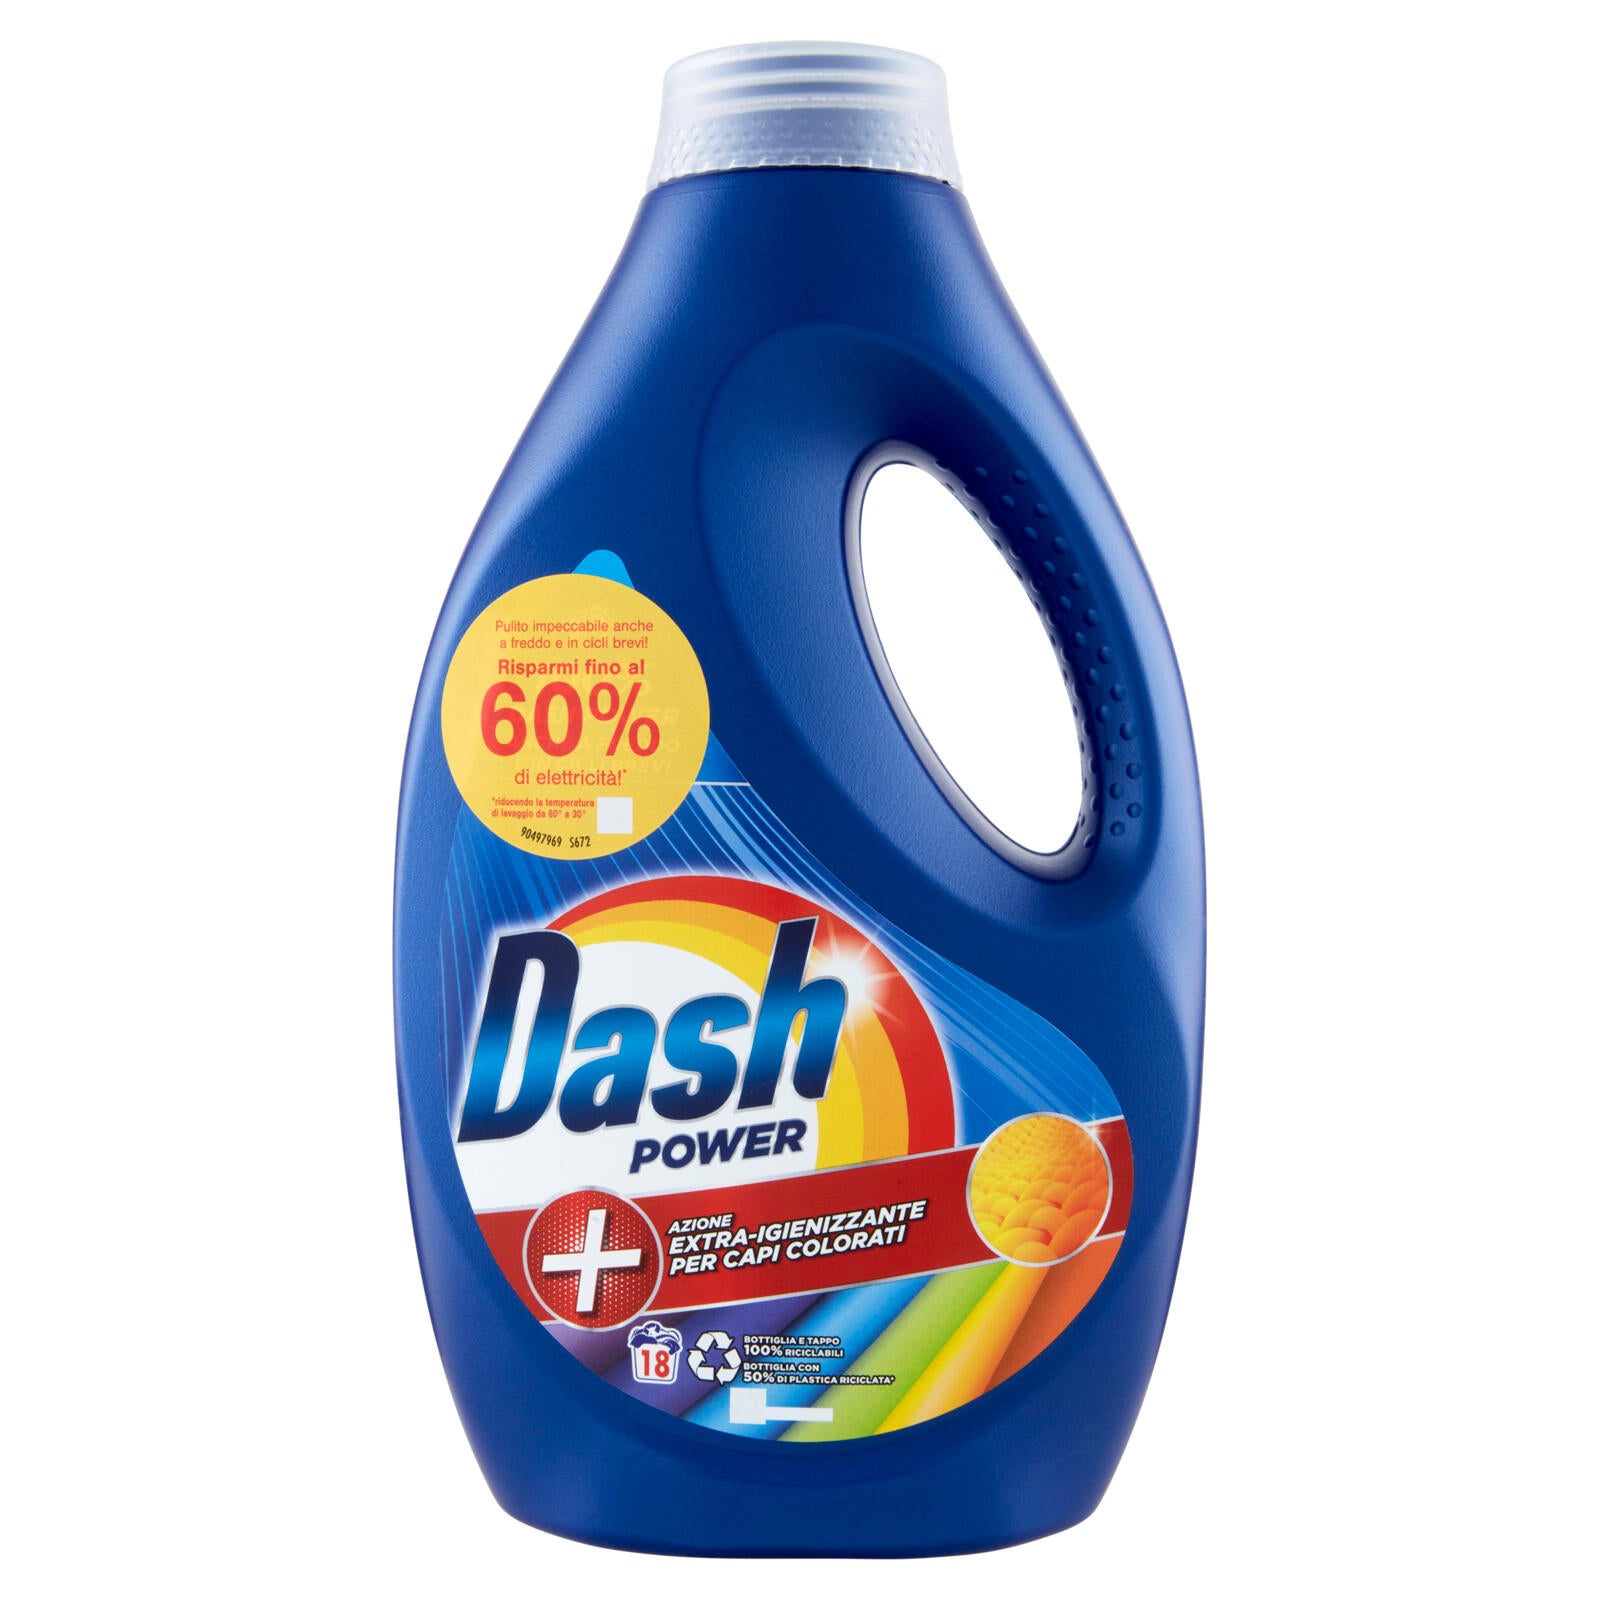 Dash Power Detersivo Liquido Lavatrice, Azione Extra-Igienizzante Capi  Colorati, 18 Lavaggi 900 ml ->